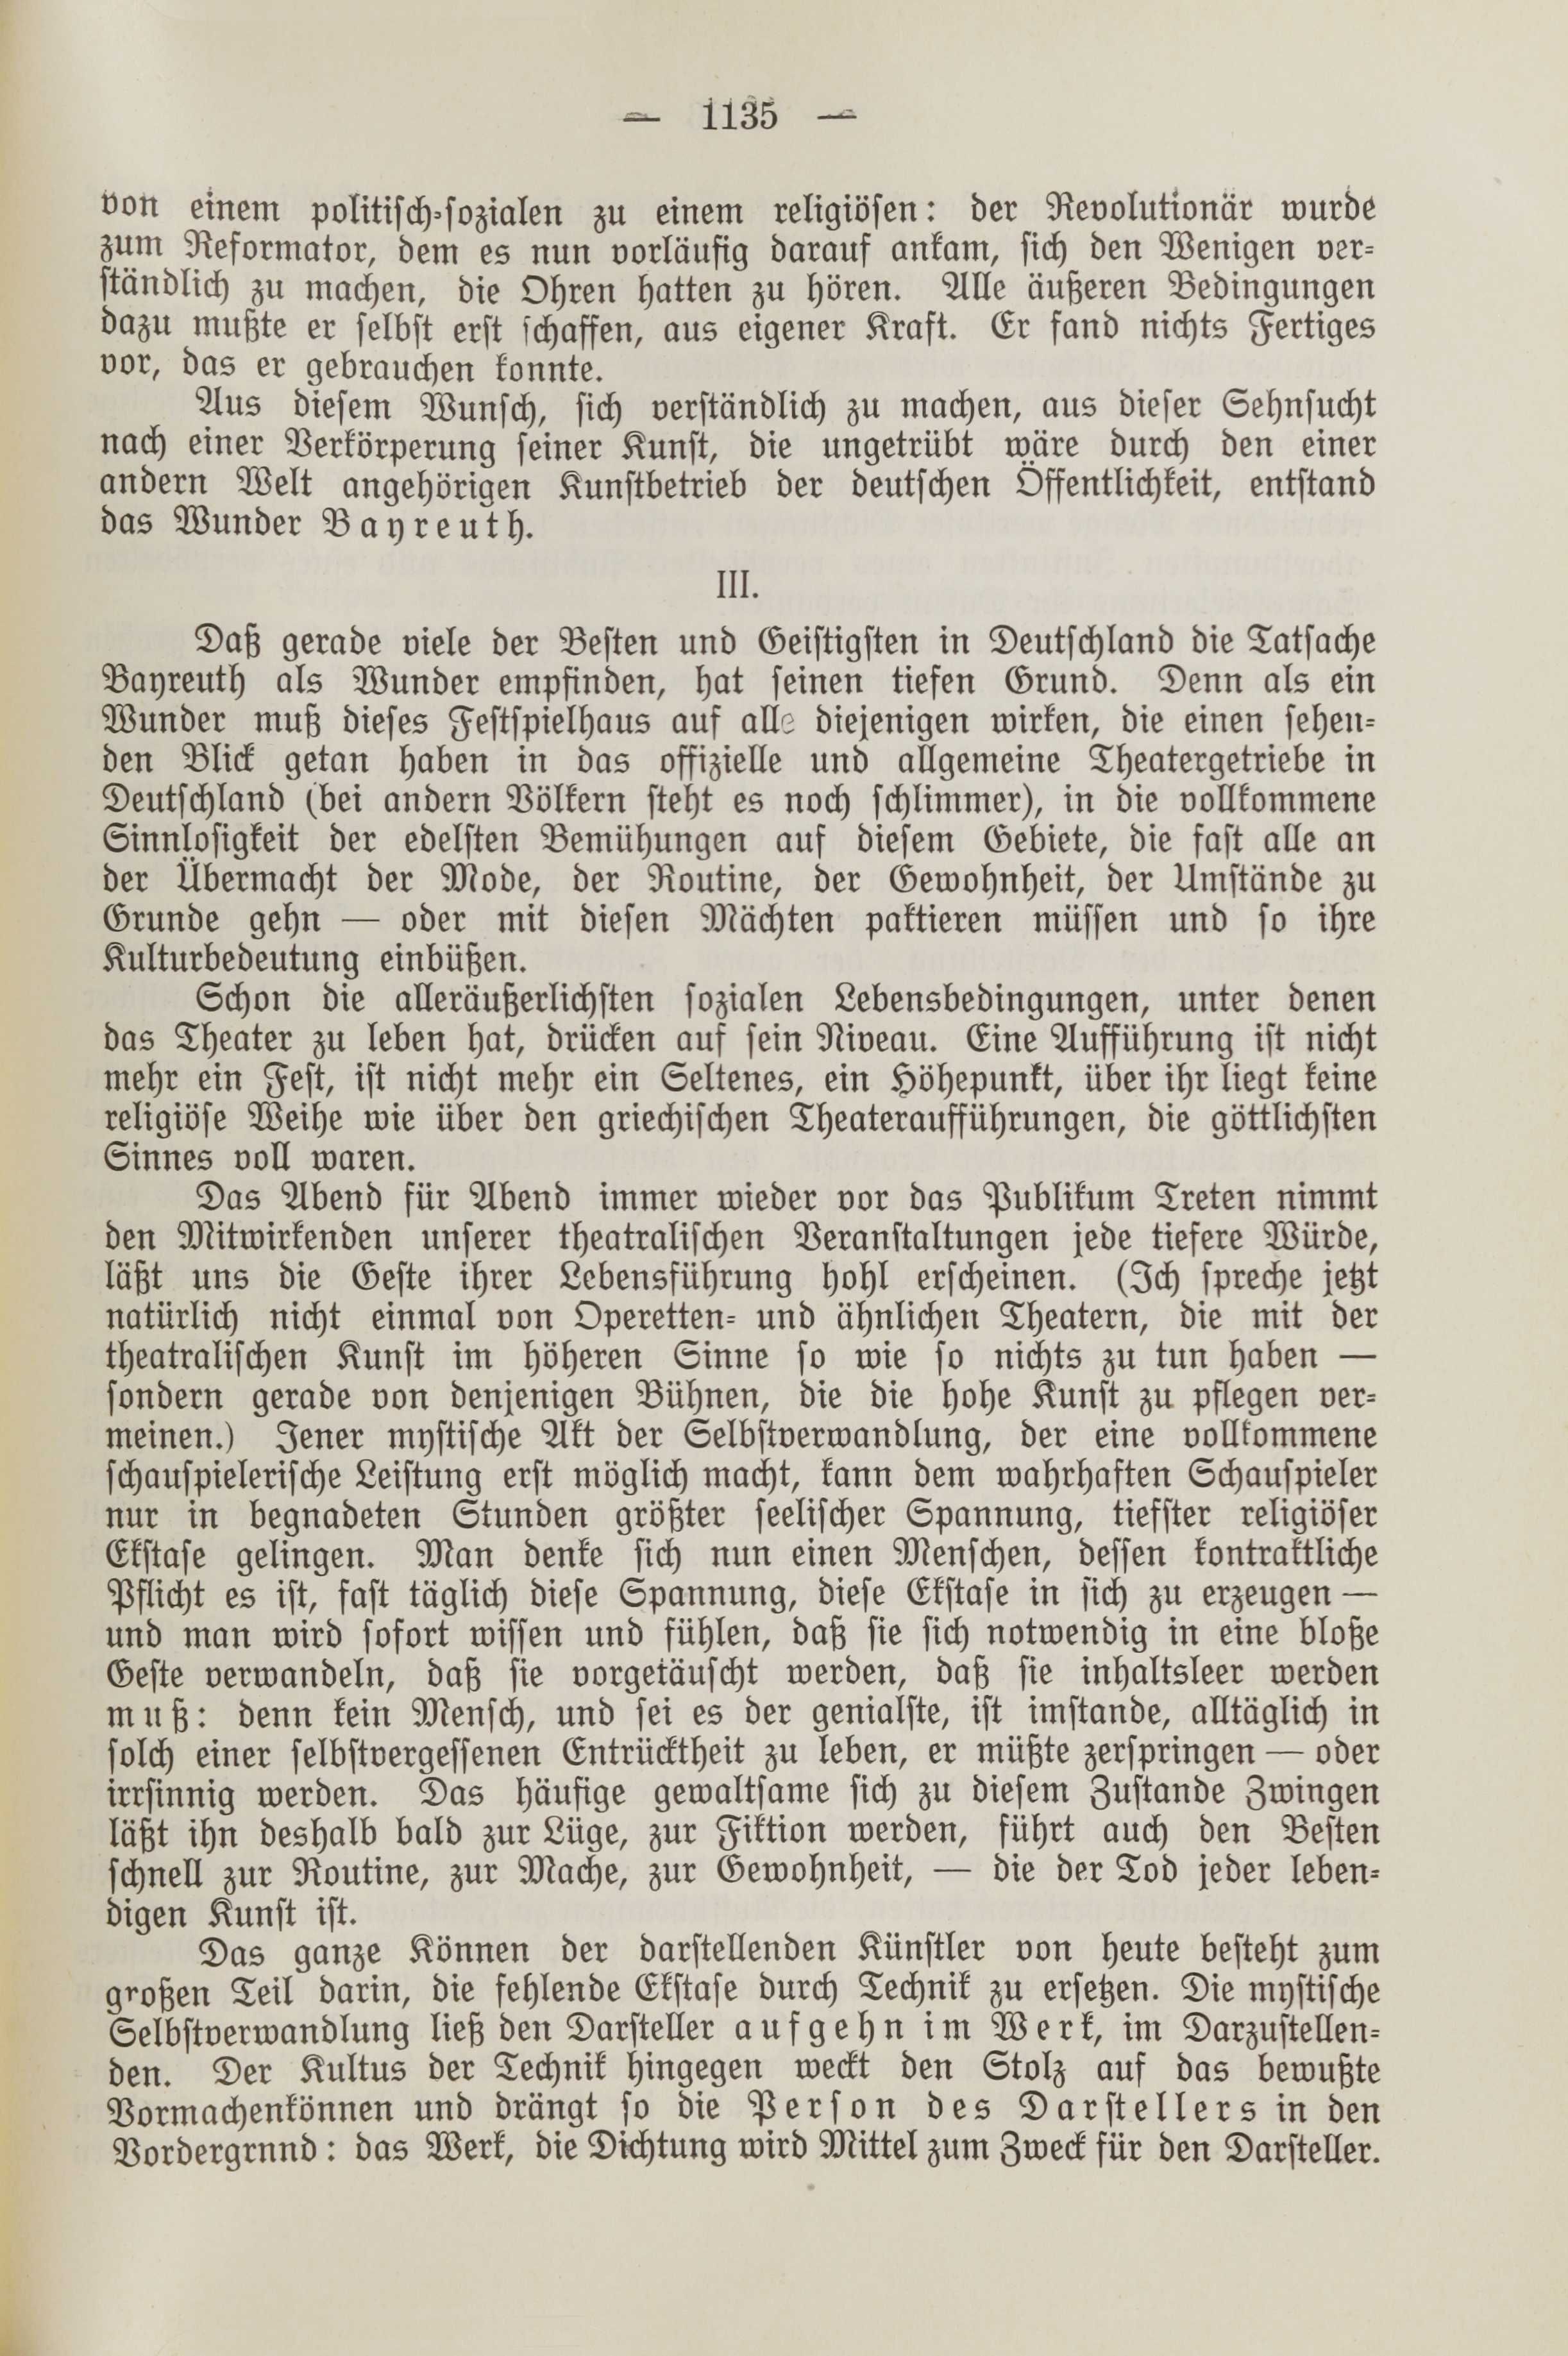 Deutsche Monatsschrift für Russland [2] (1913) | 1142. (1135) Main body of text